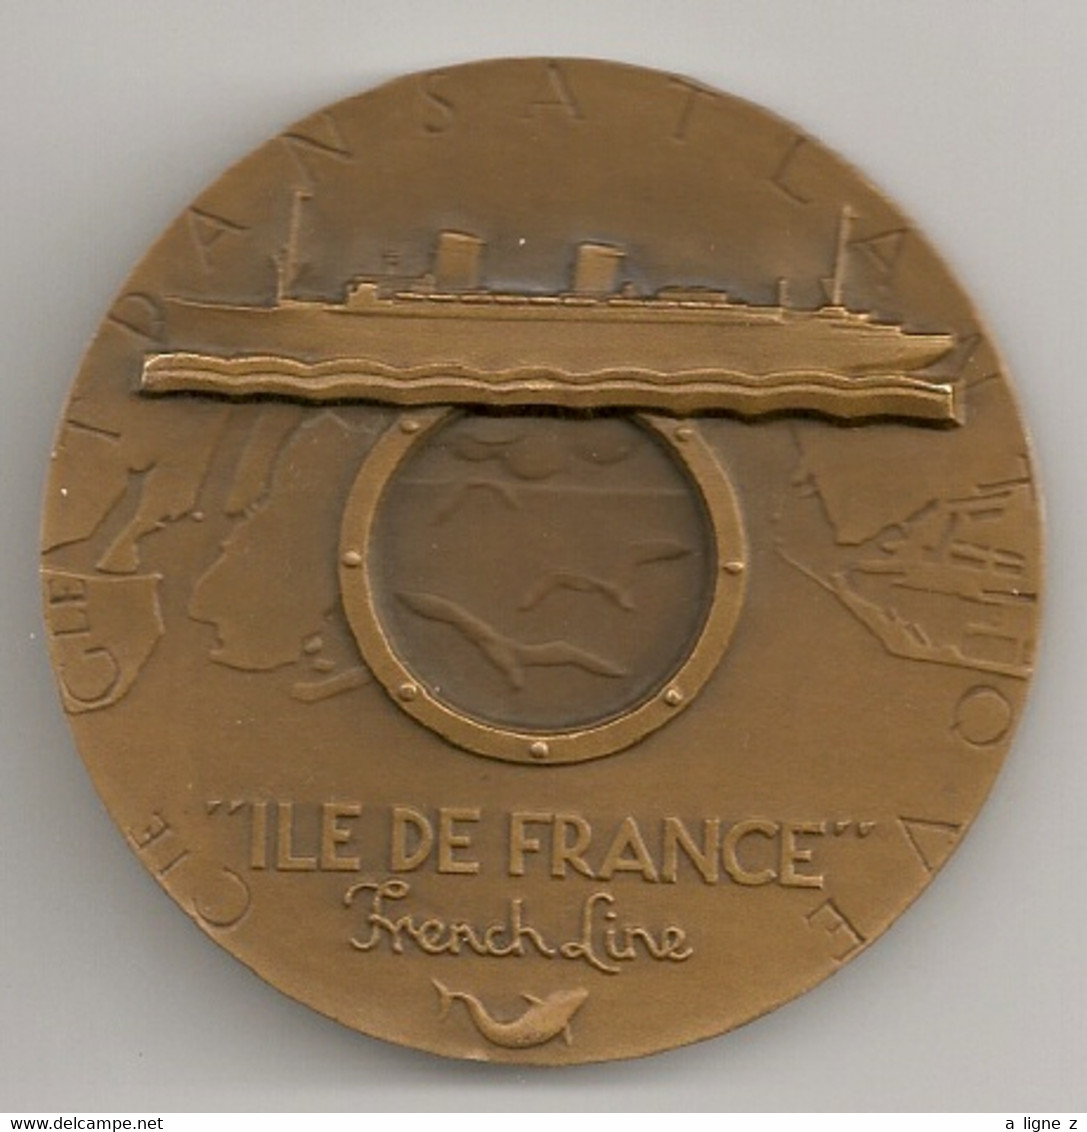 Ref KDK : Médaille Bronze 55 Mm Paquebot Ile De France French Line Cie Générale Transatlantique CGT - Professionnels / De Société